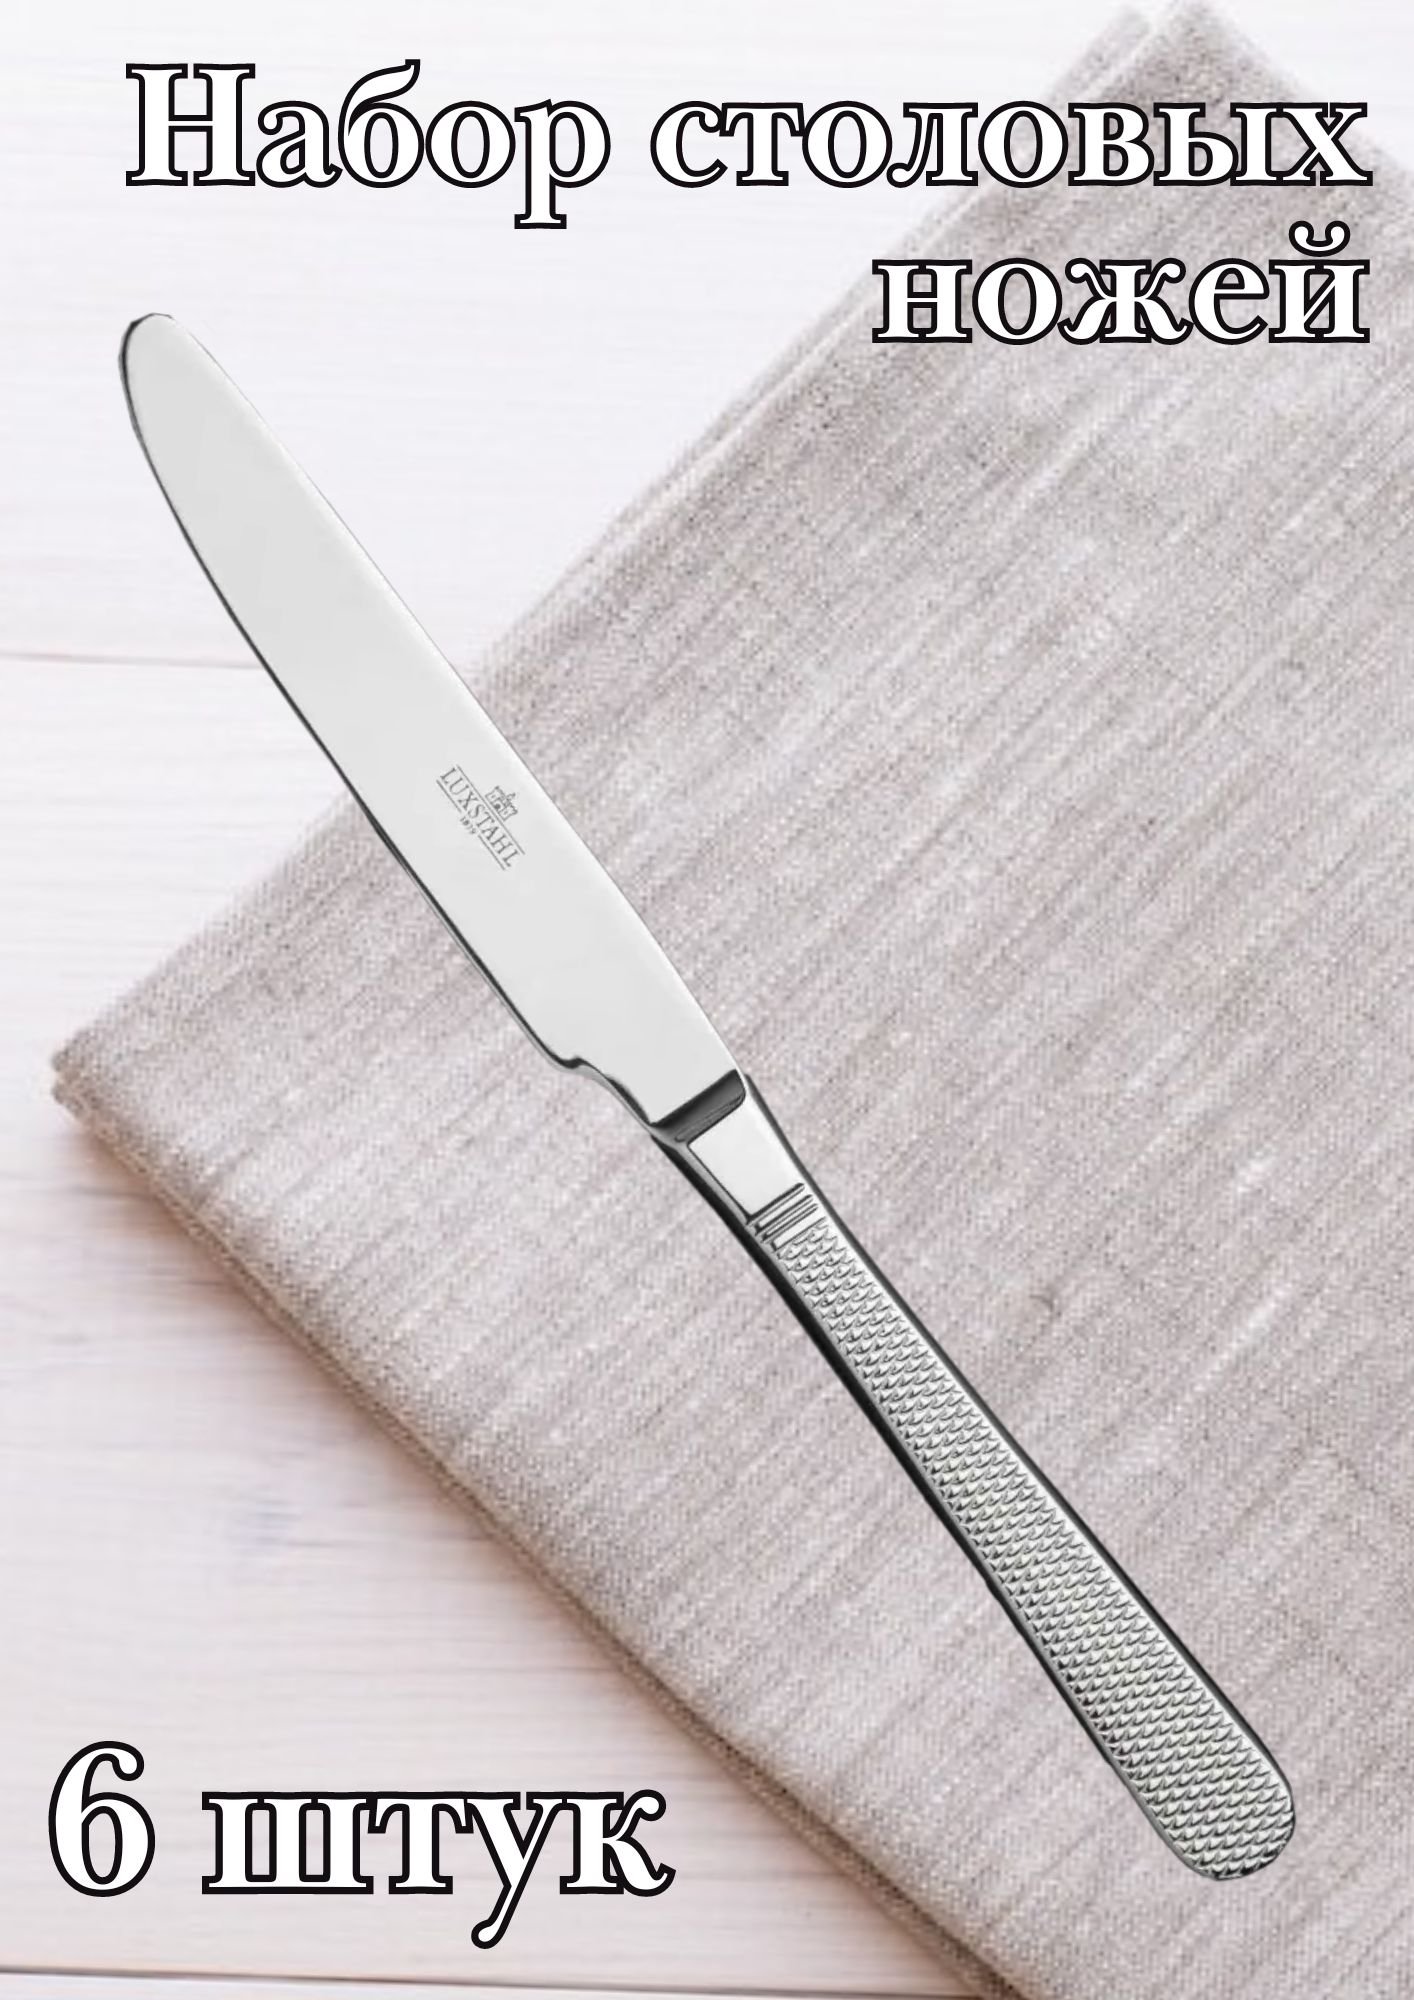 Нож столовый "Oslo" Luxstahl 6 шт